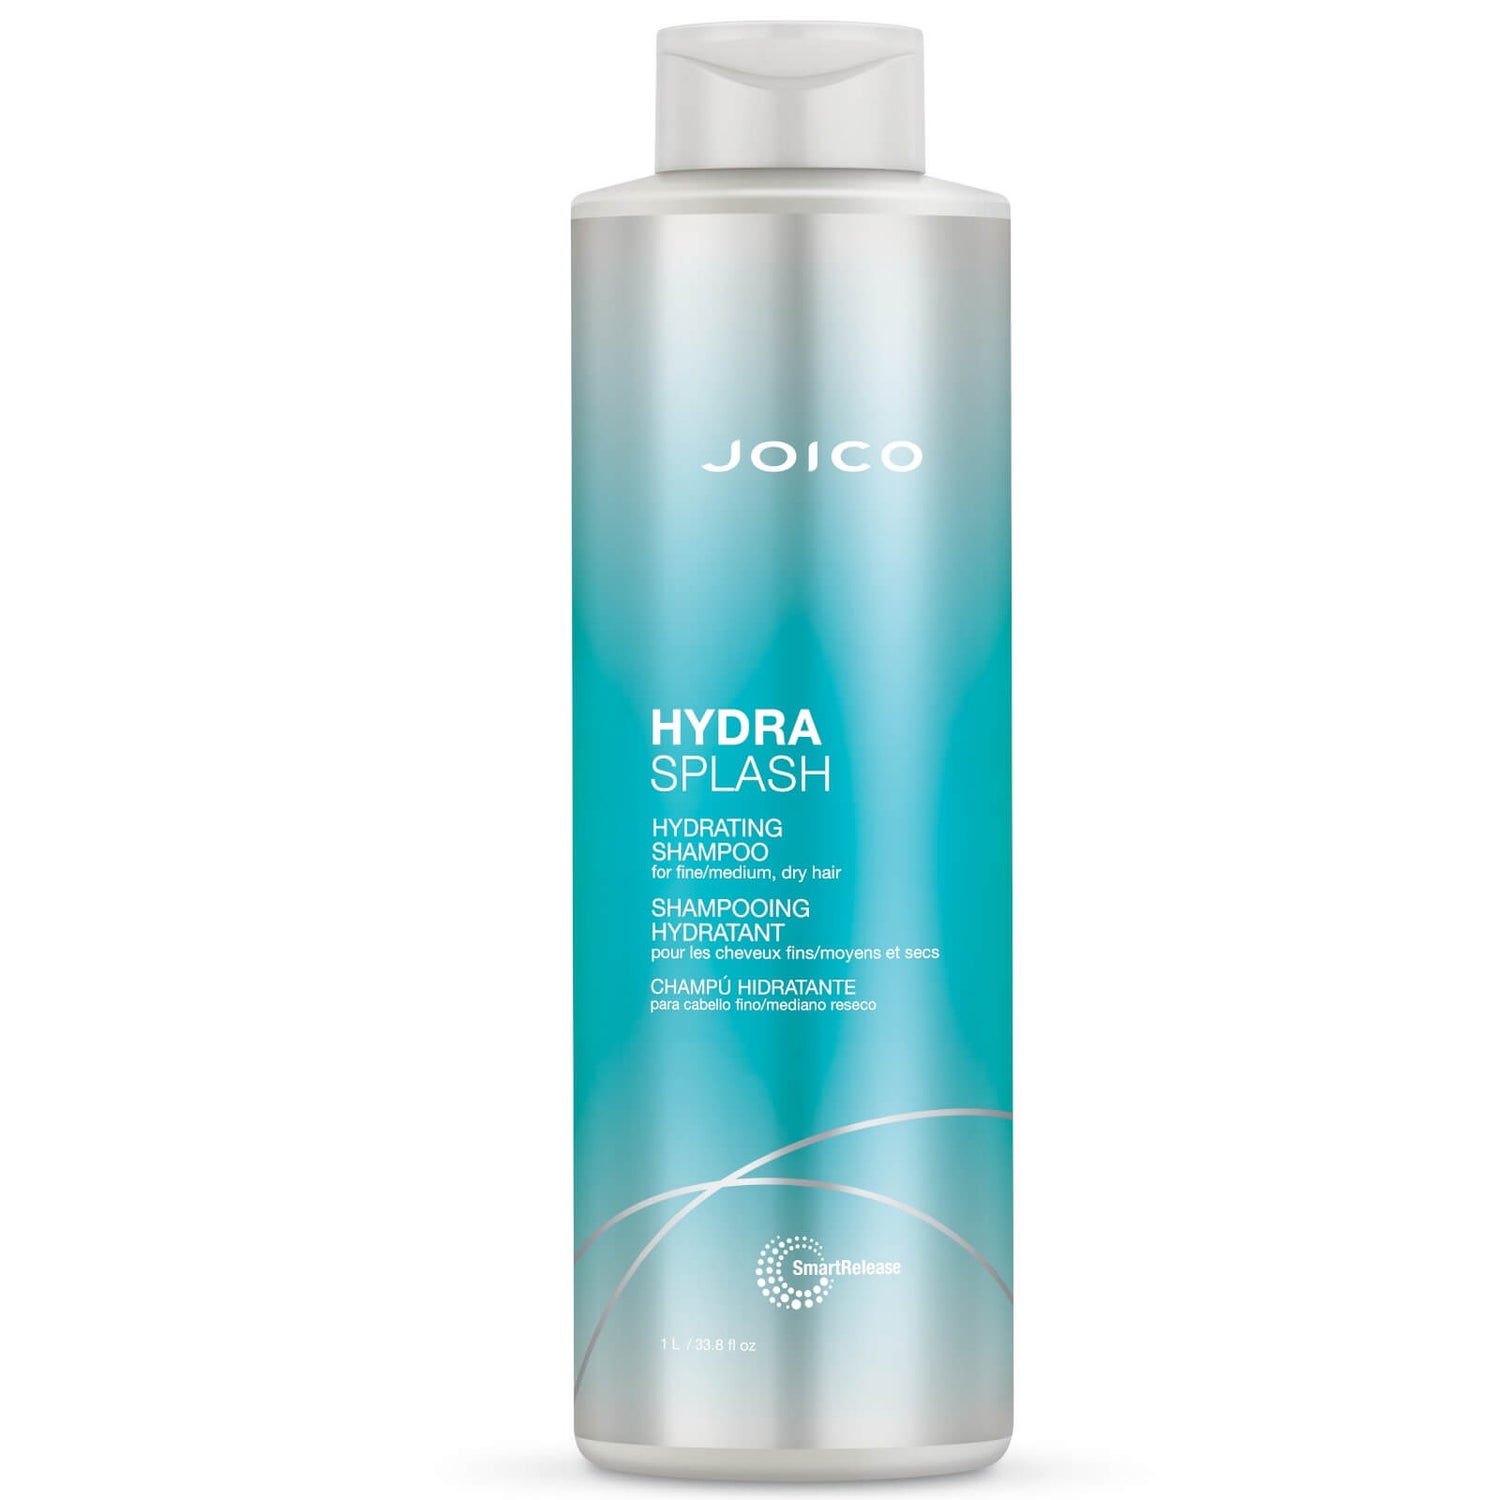 Joico Hydra Splash Shampoo idratante per capelli fini-medi, secchi 1000ml